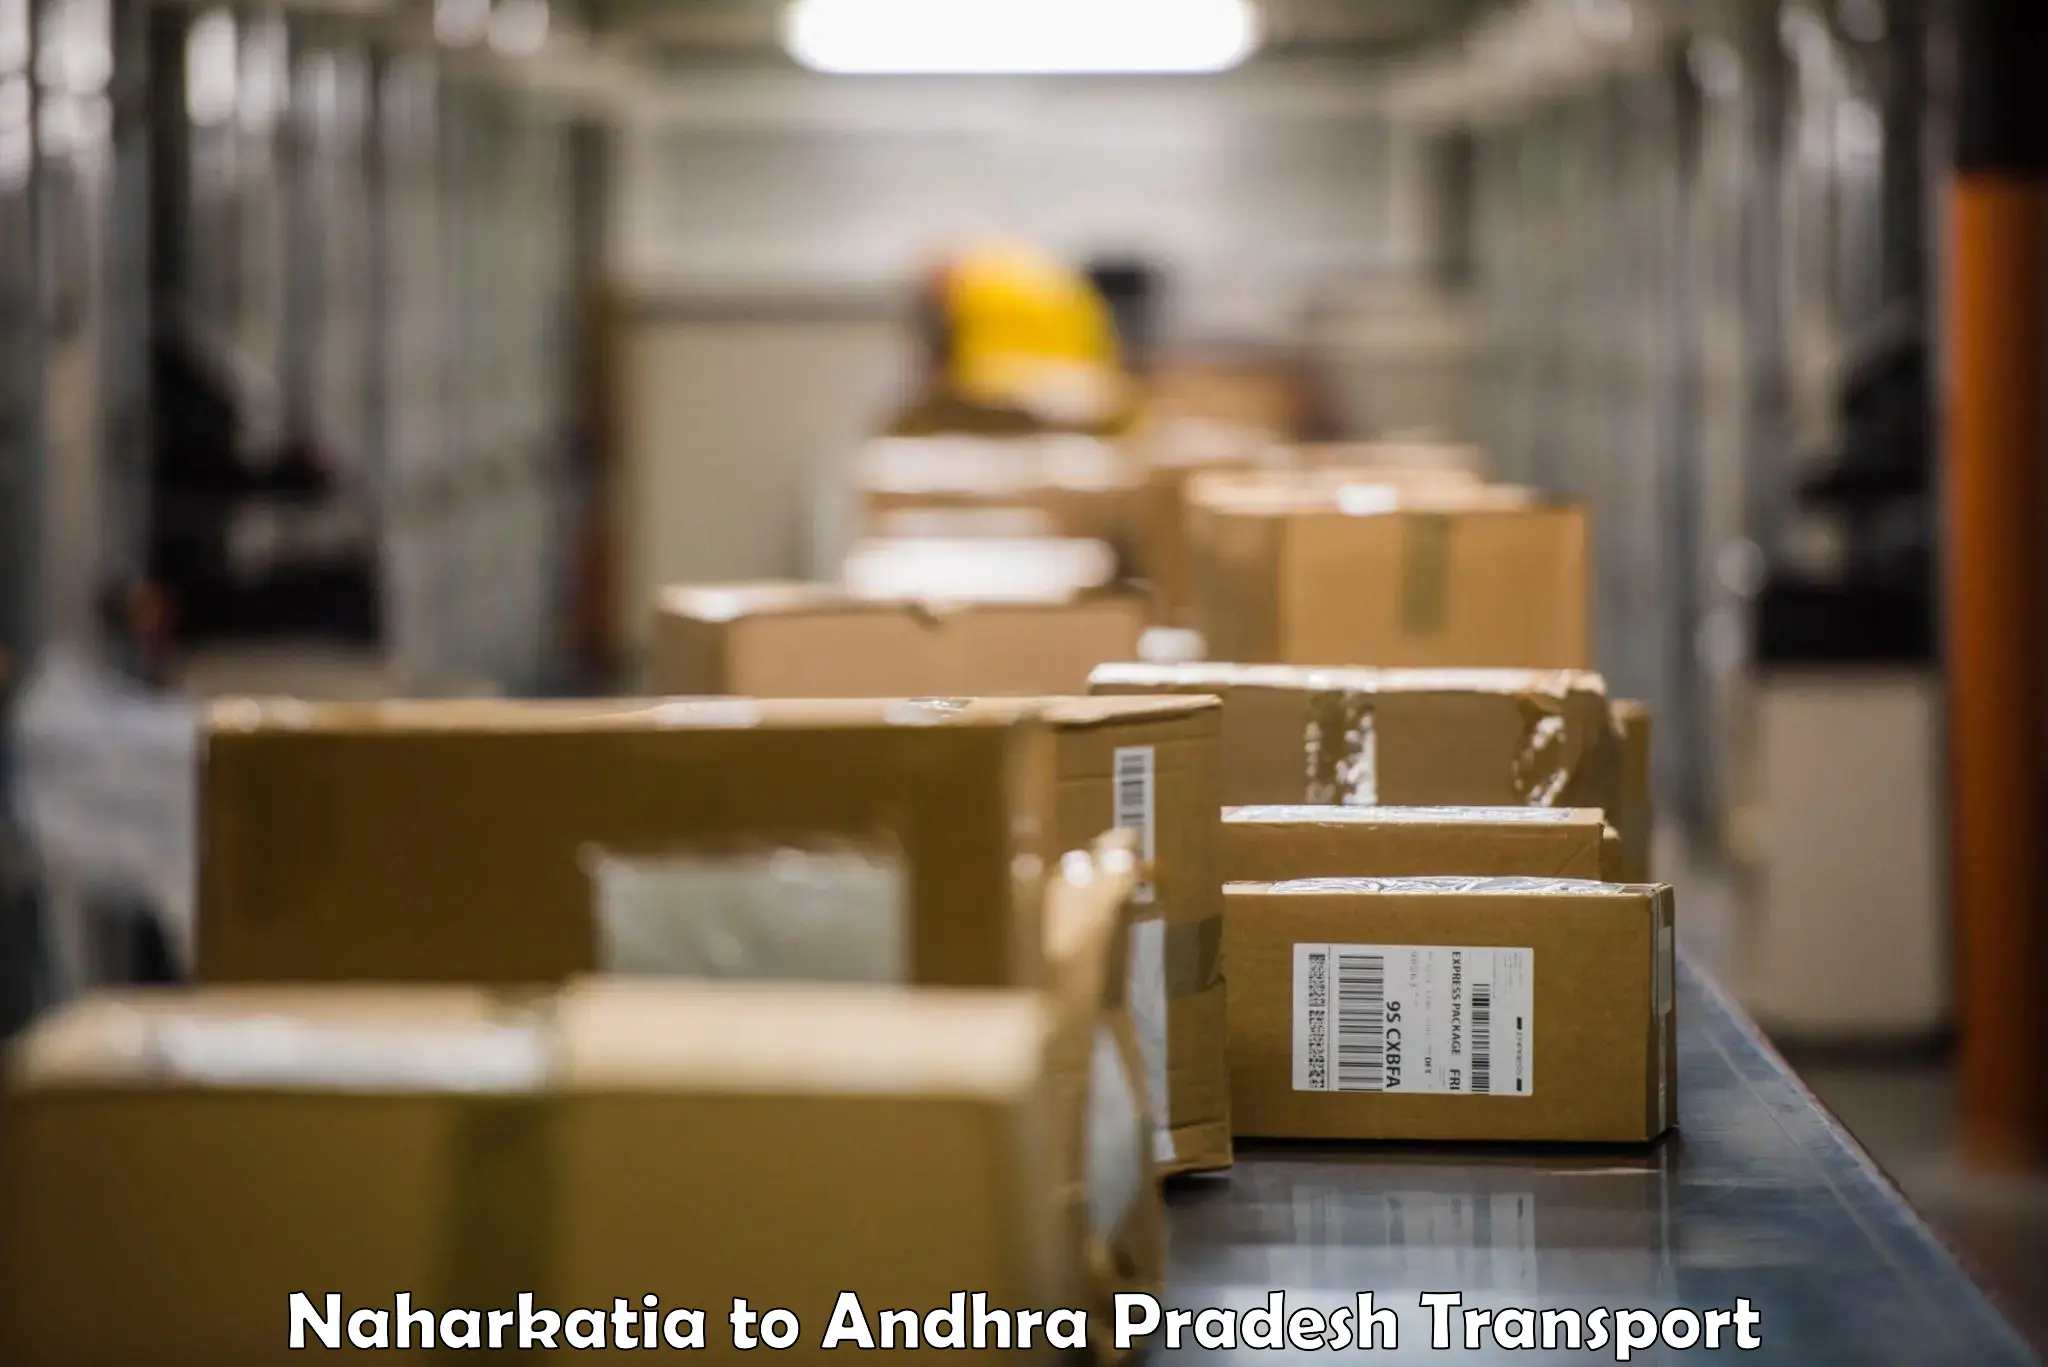 Domestic goods transportation services Naharkatia to Pakala